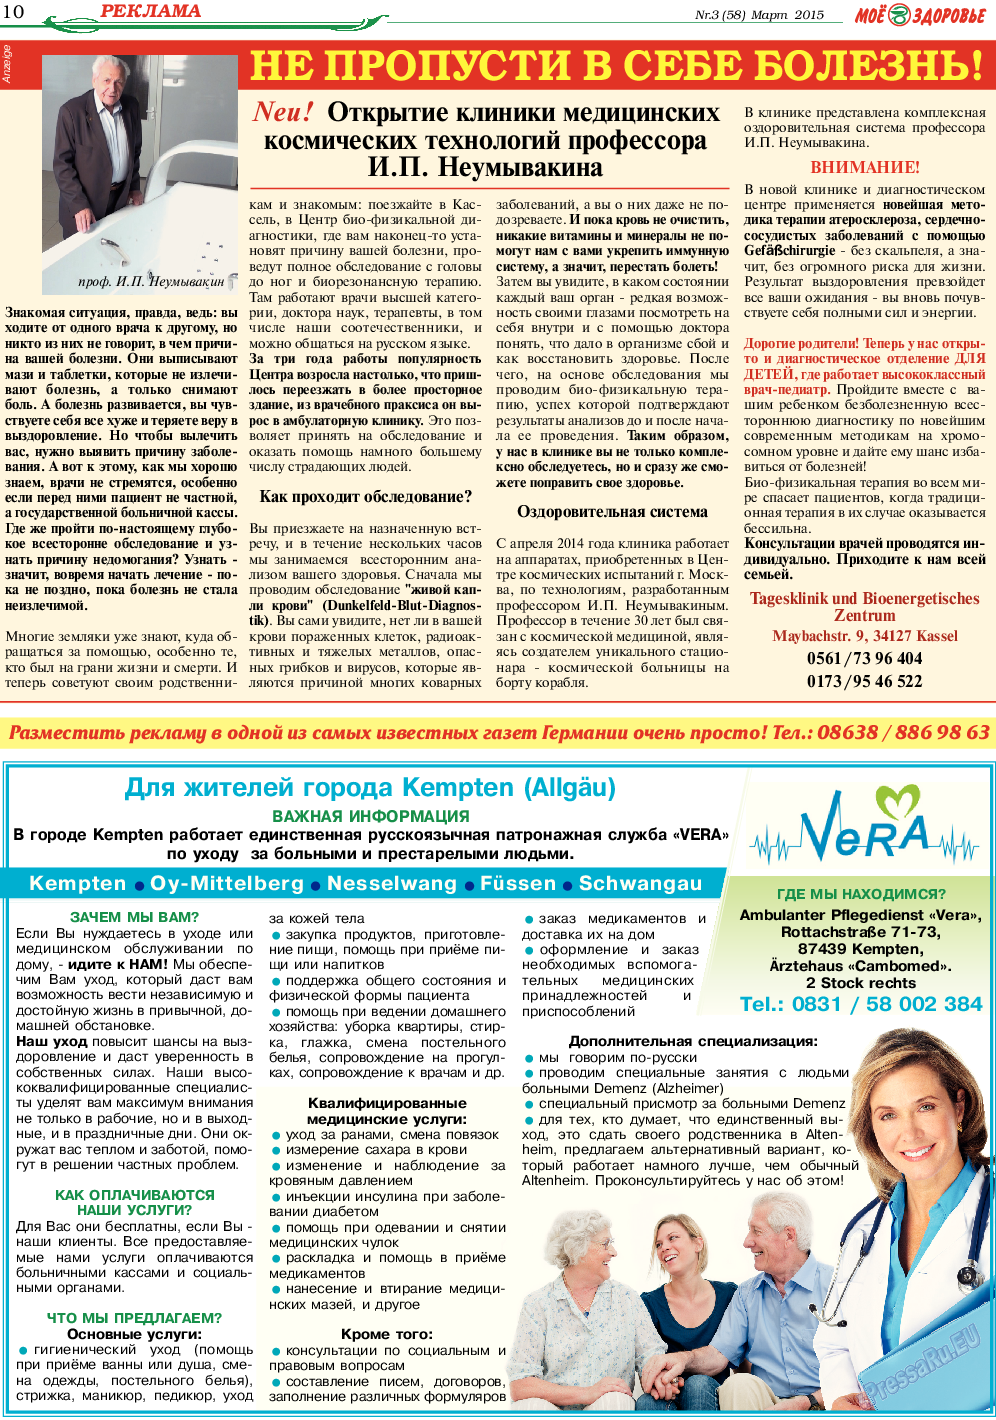 Кругозор, газета. 2015 №3 стр.10